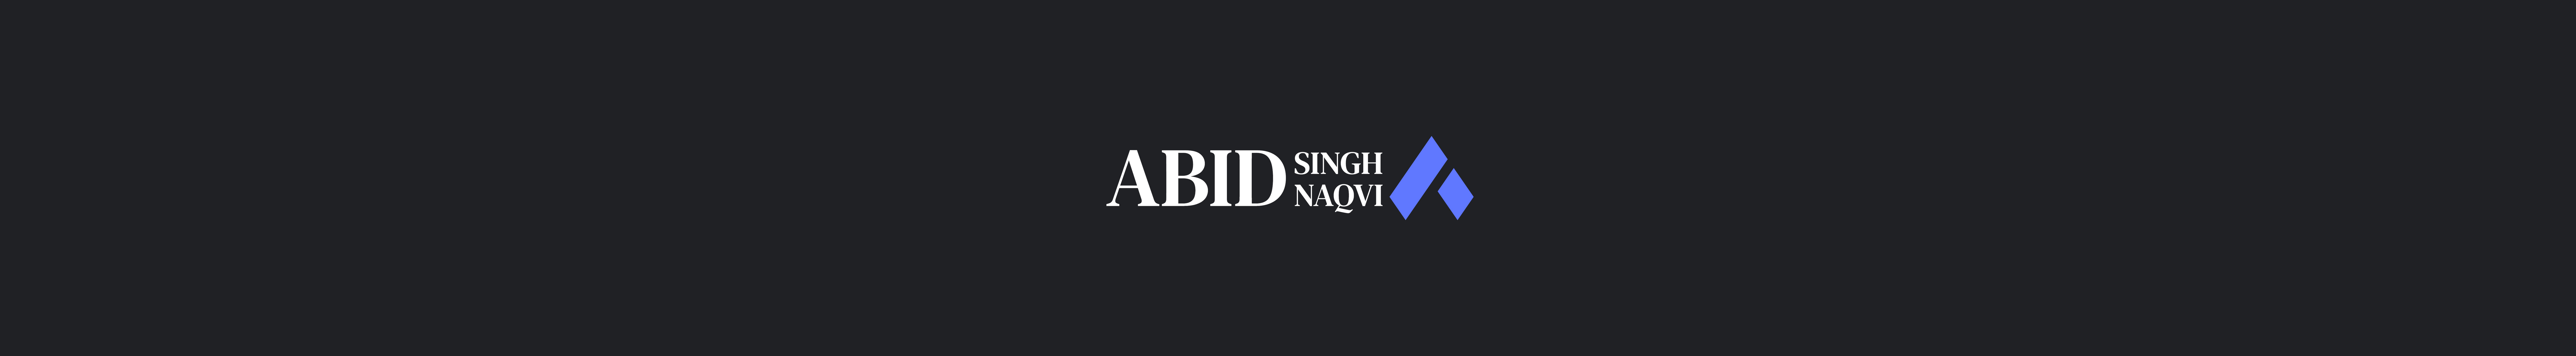 Abid Singh Naqvi's profile banner